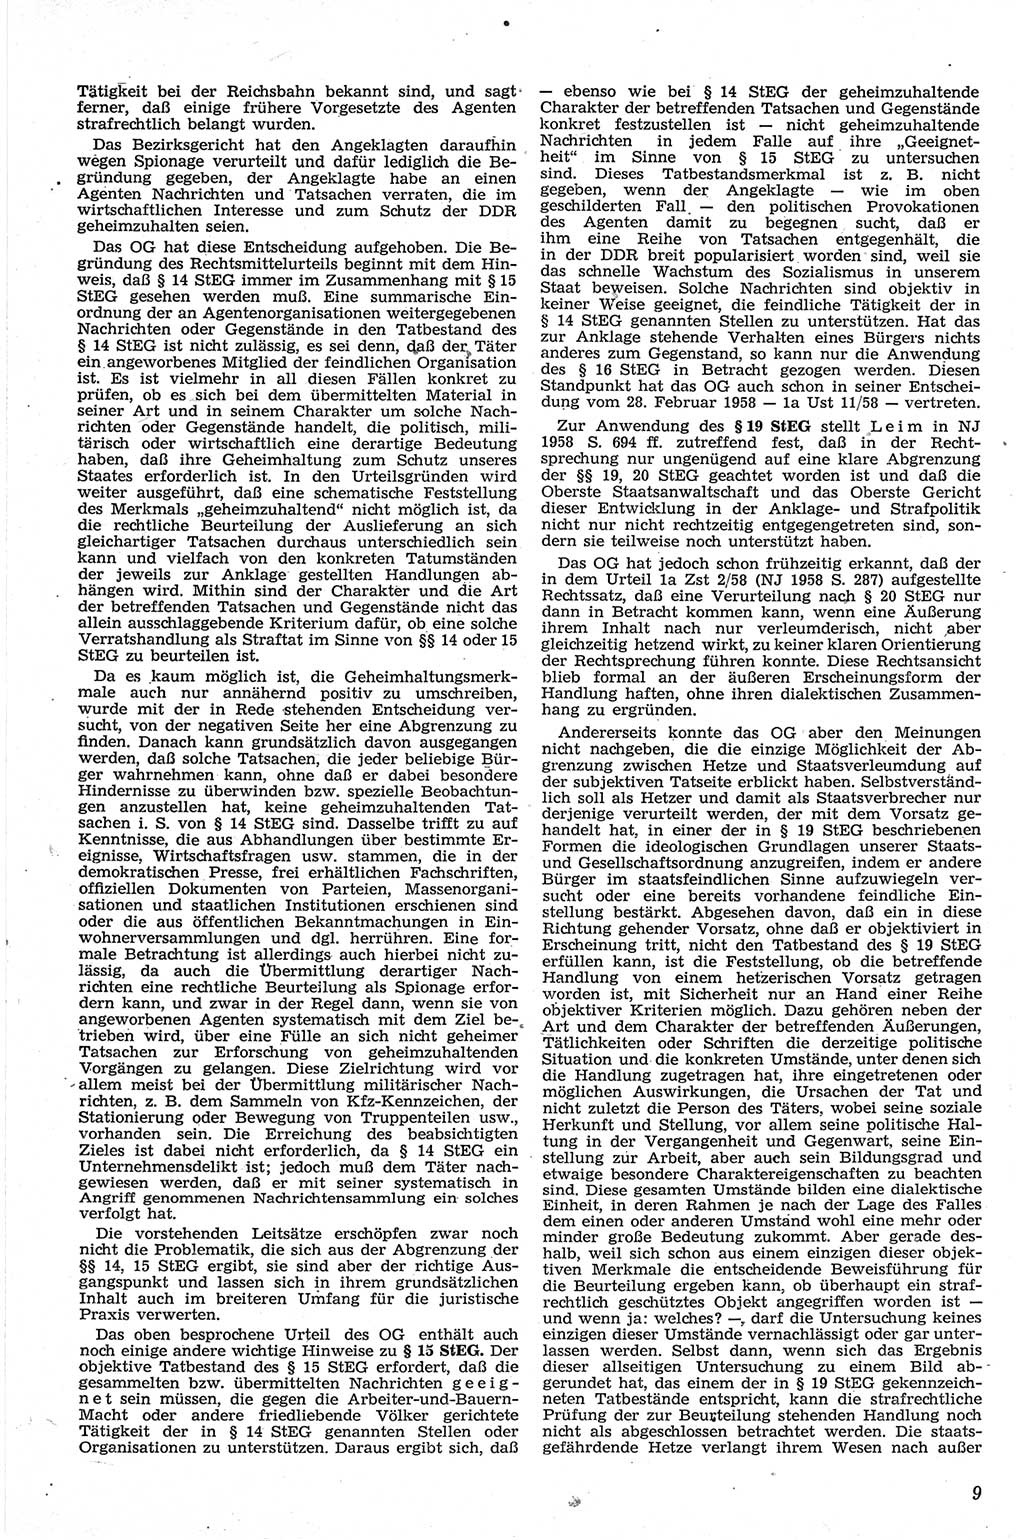 Neue Justiz (NJ), Zeitschrift für Recht und Rechtswissenschaft [Deutsche Demokratische Republik (DDR)], 13. Jahrgang 1959, Seite 9 (NJ DDR 1959, S. 9)